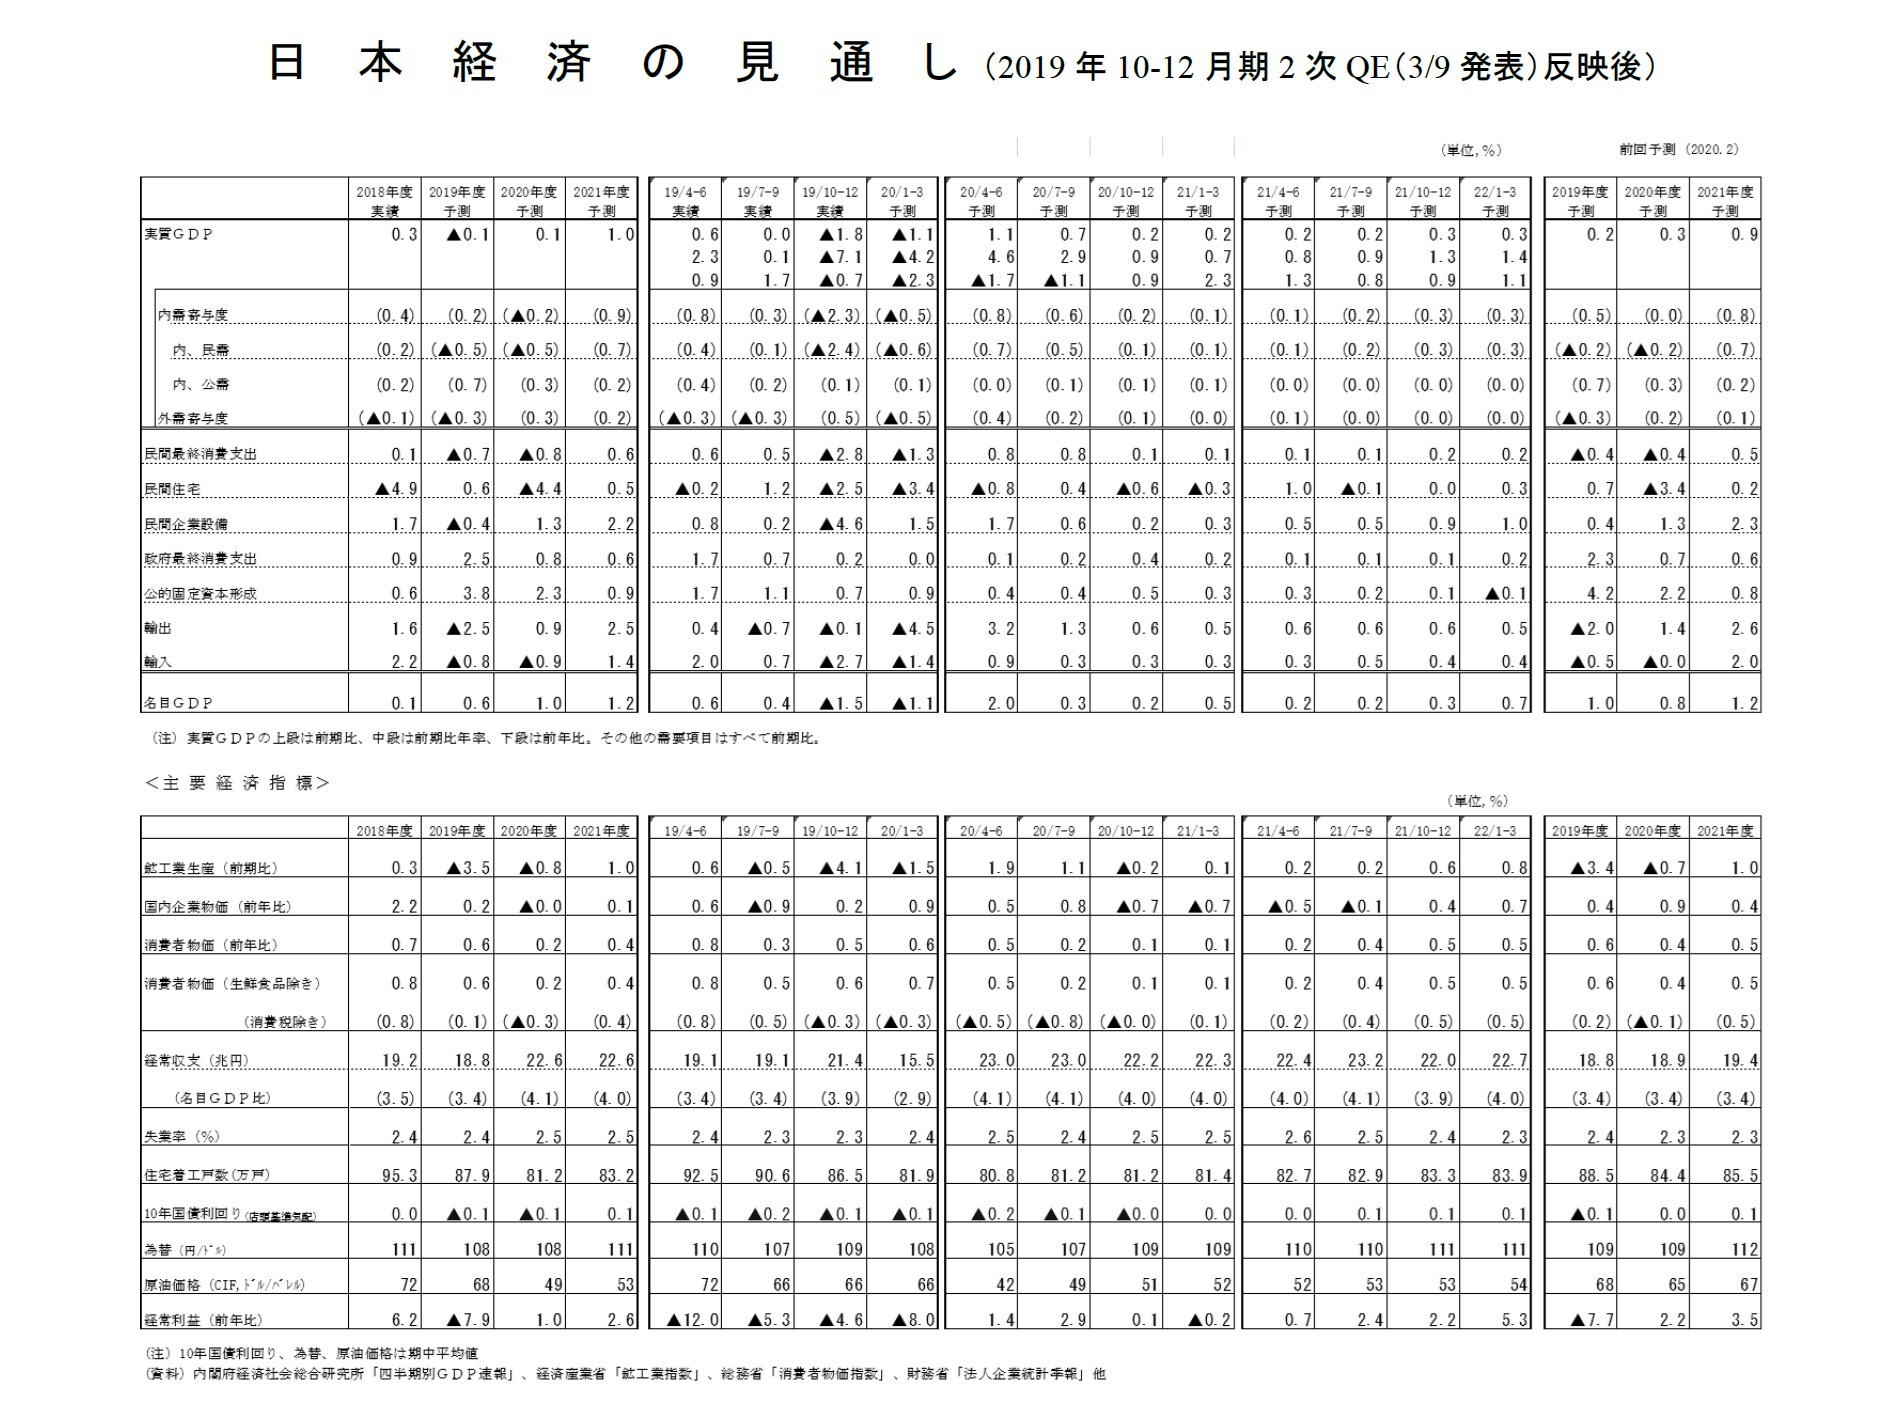 日本経済の見通し（2019年10-12月期2次QE（3/9発表）反映後）